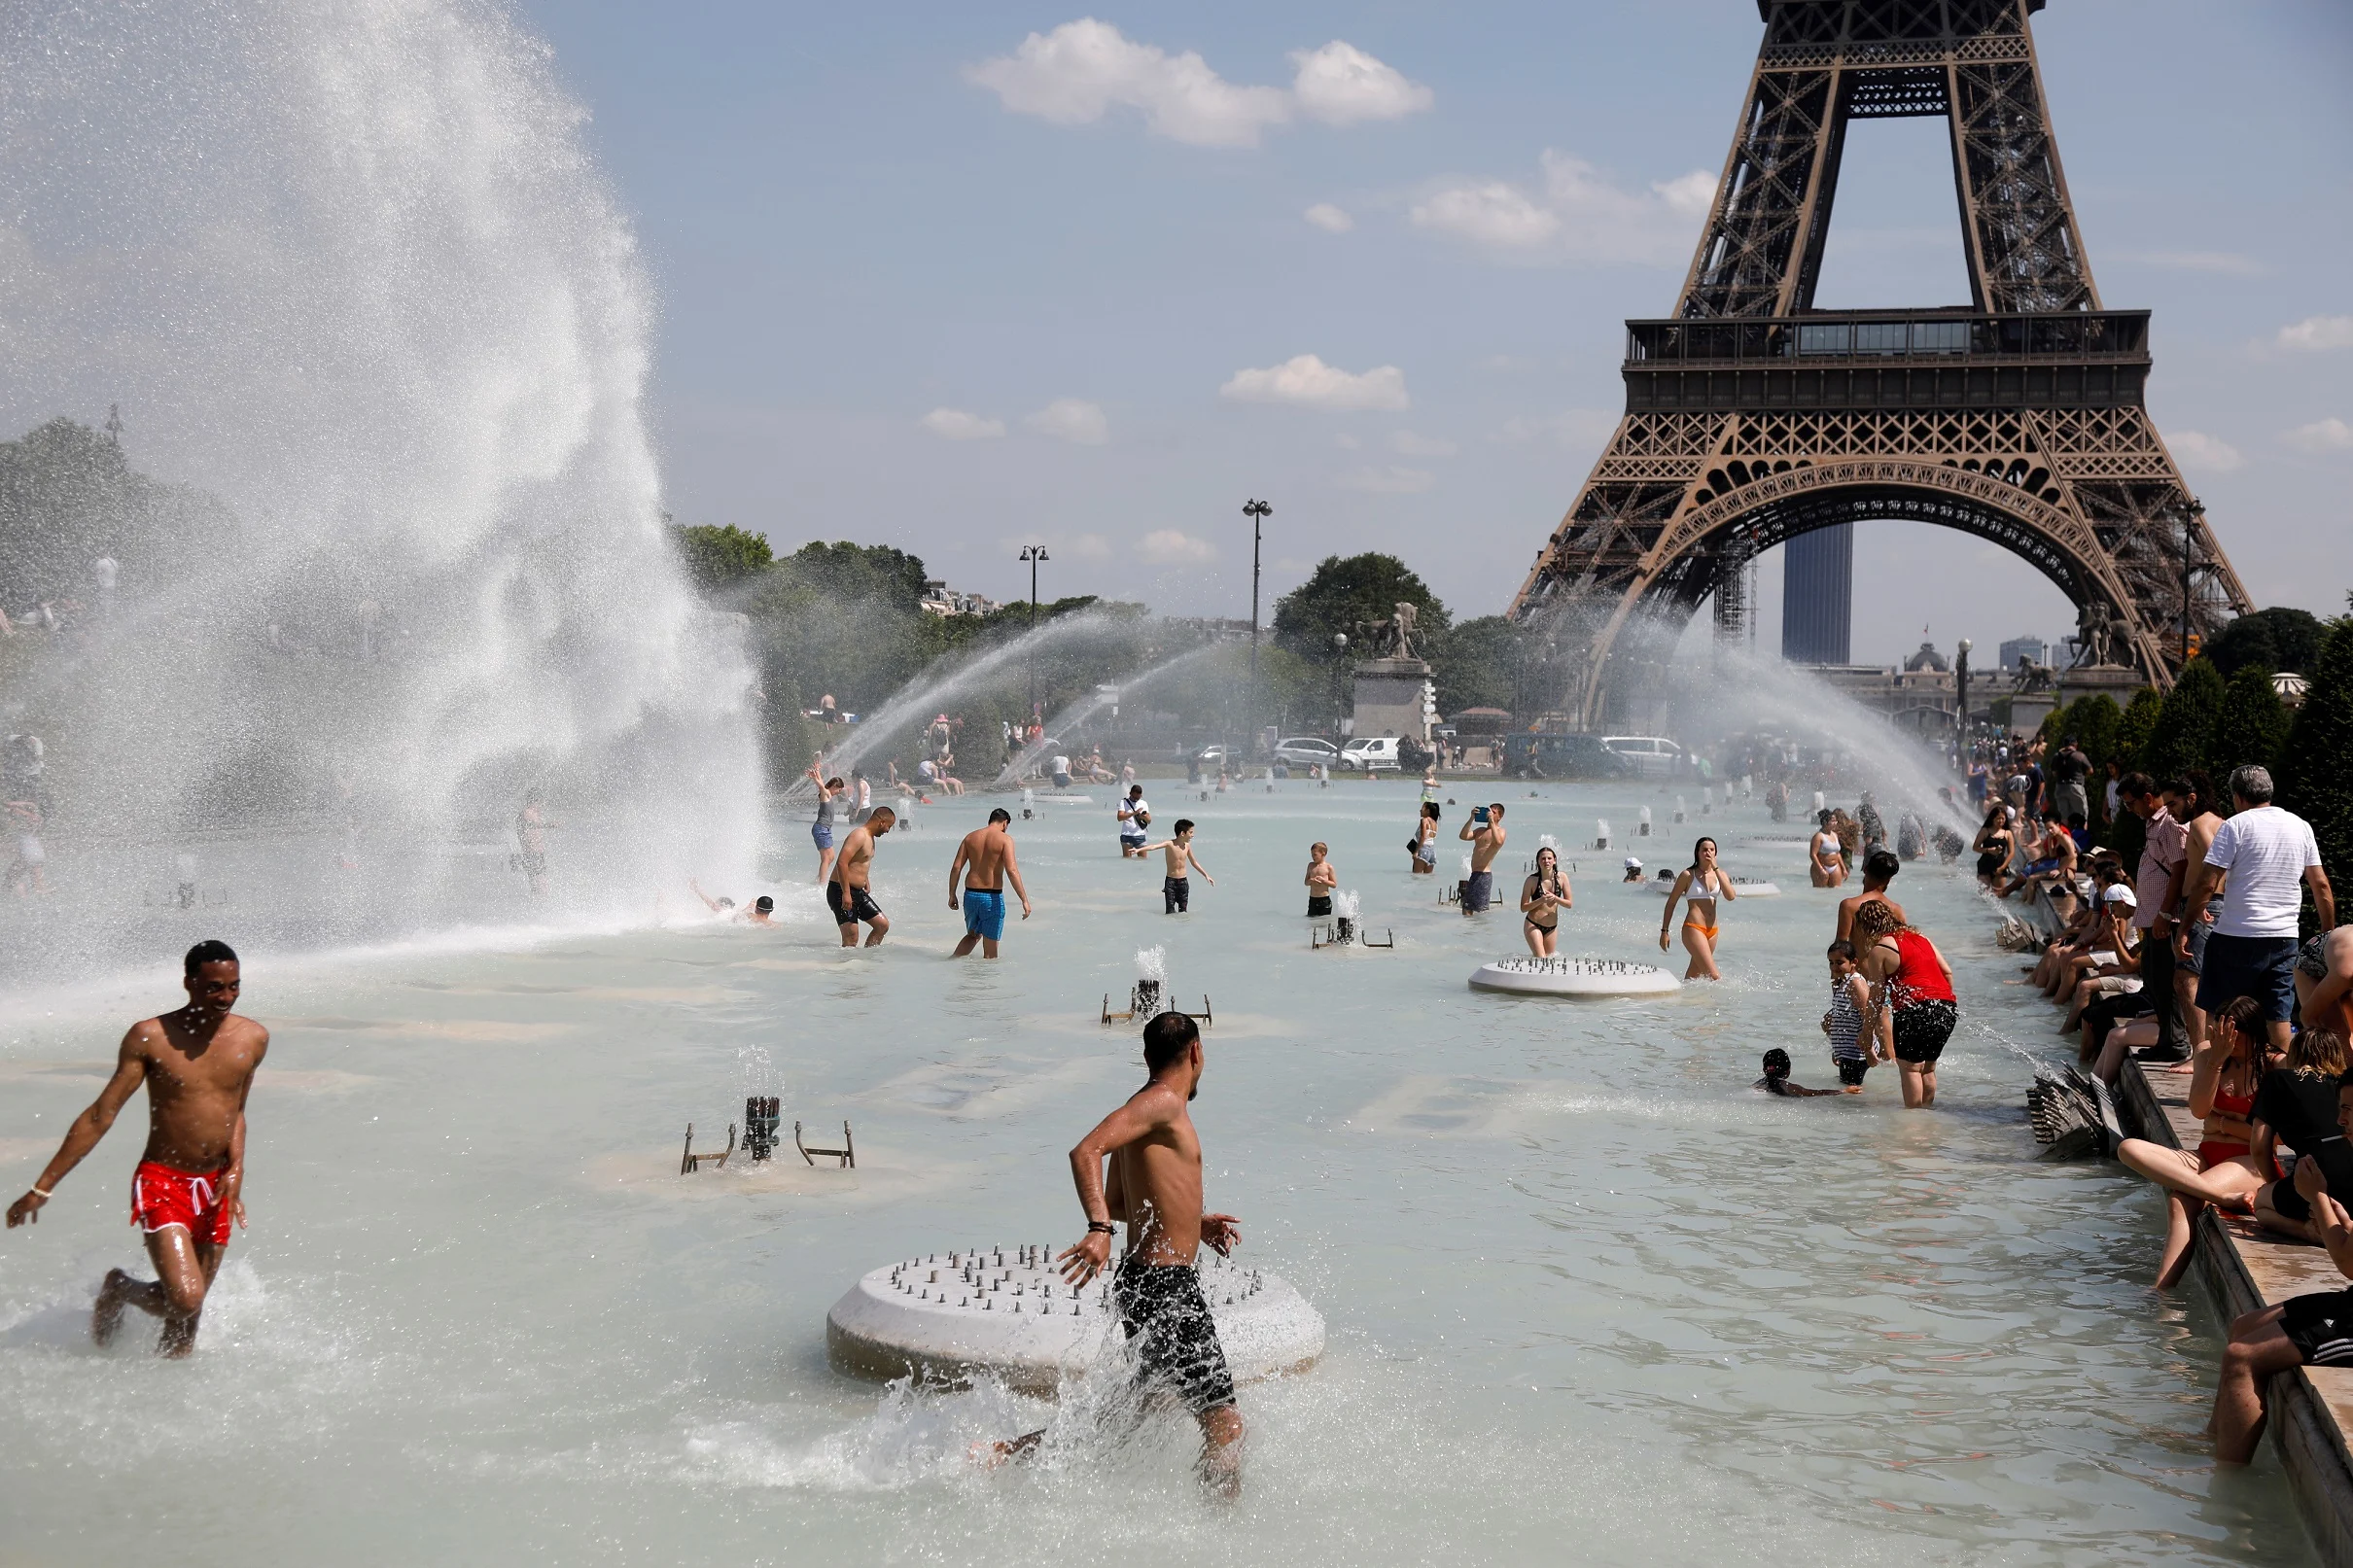 אנשים מתקררים בעת גל החום שפקד את צרפת